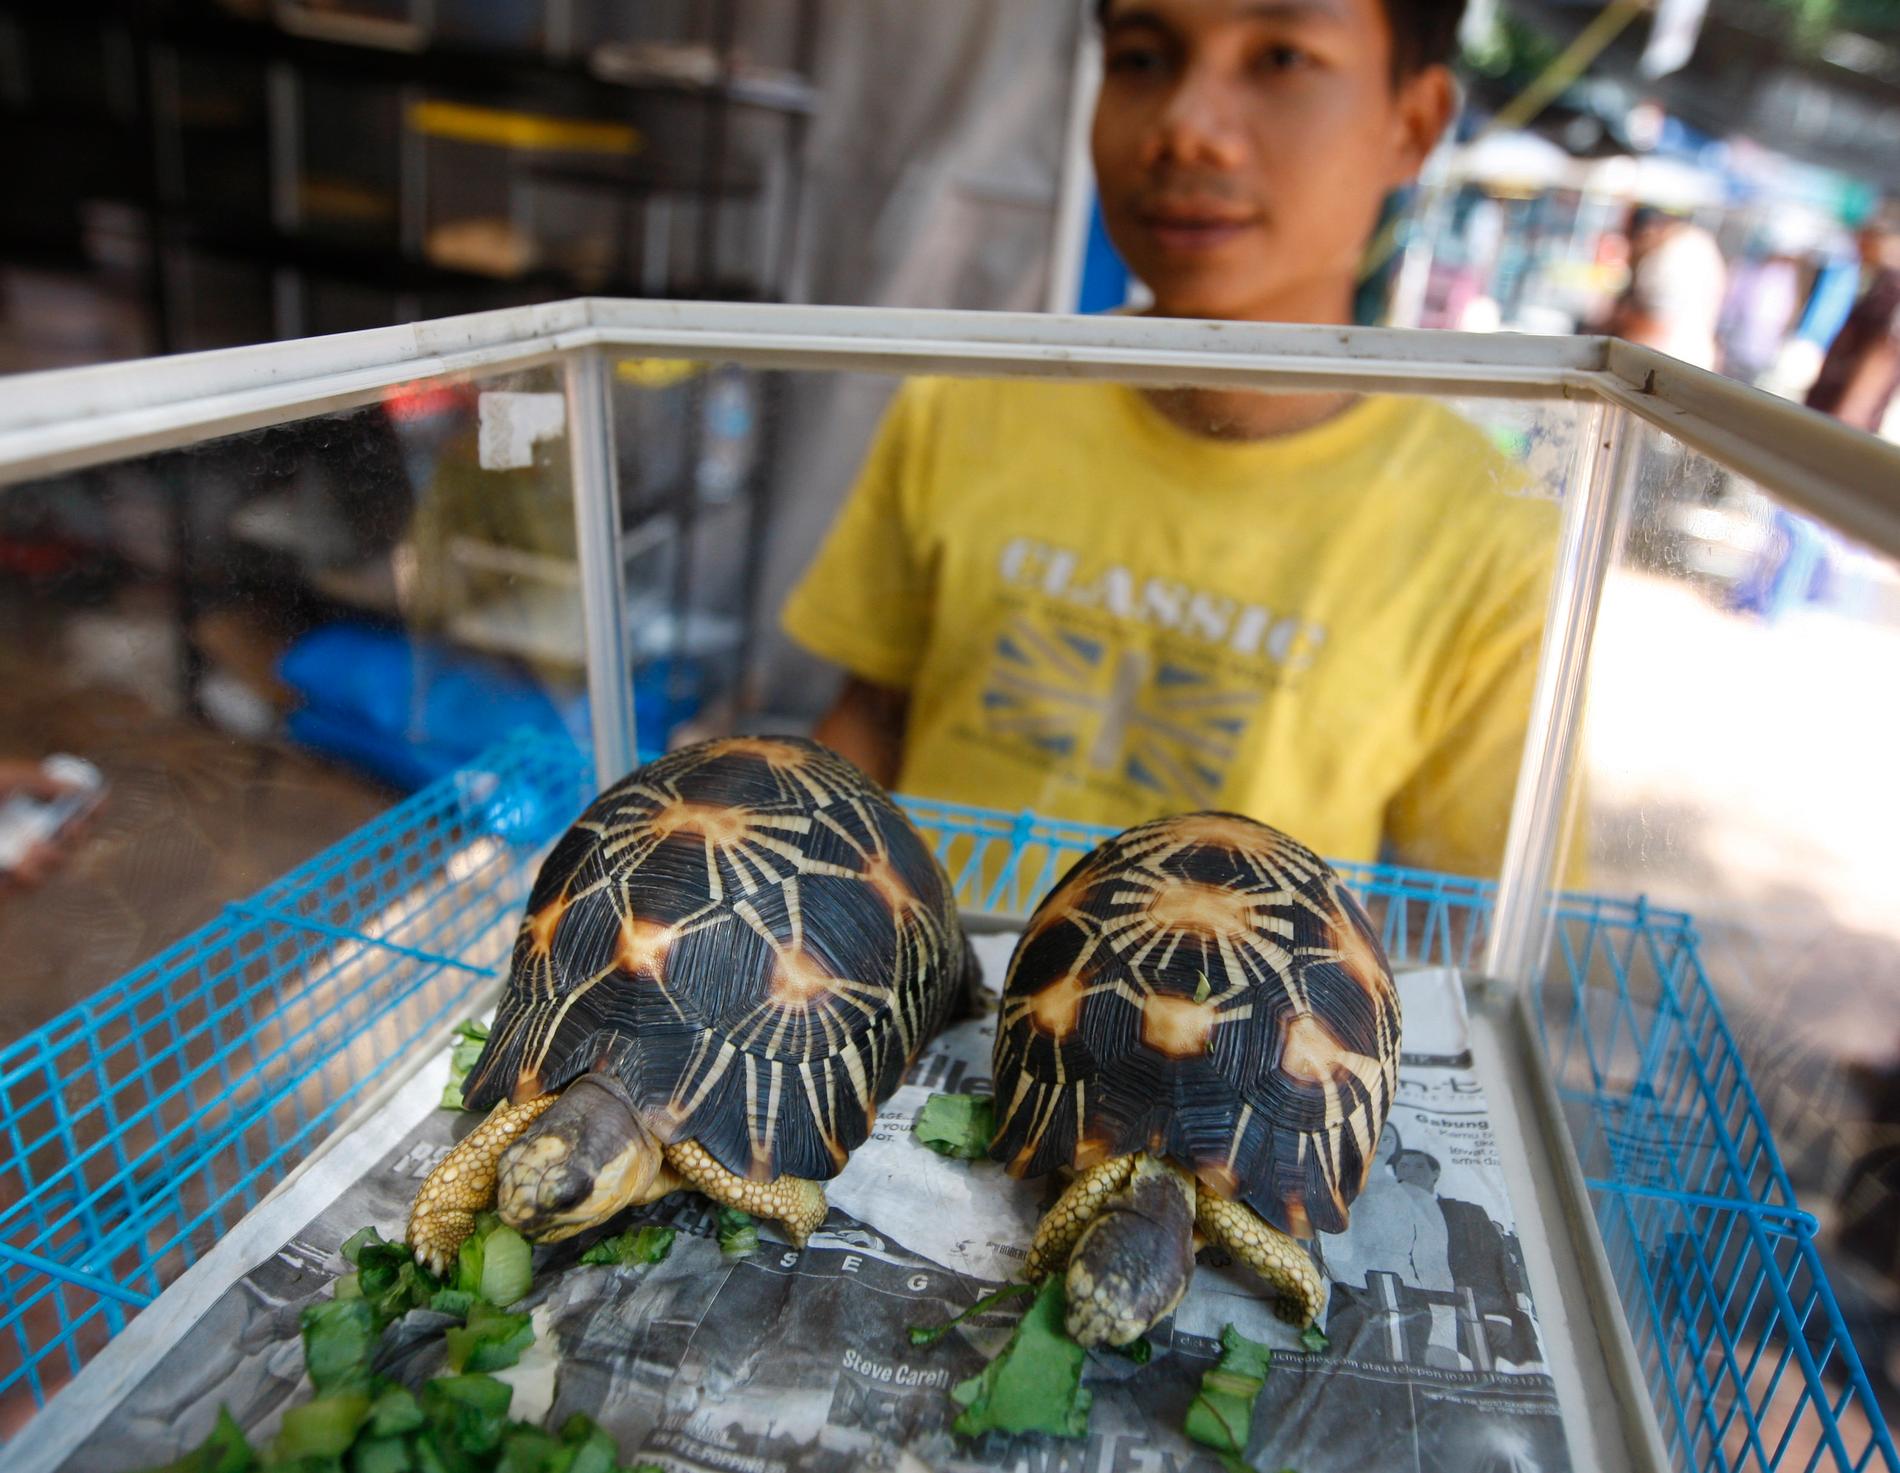 Myndigheter på Madagaskar hittade i mitten av april 11 000 sköldpaddor i ett hus. Djuren har tagits omhand av välgörenhetsorganisationer som försöker rädda så många som möjligt för att kunna släppa ut dem i naturen igen.